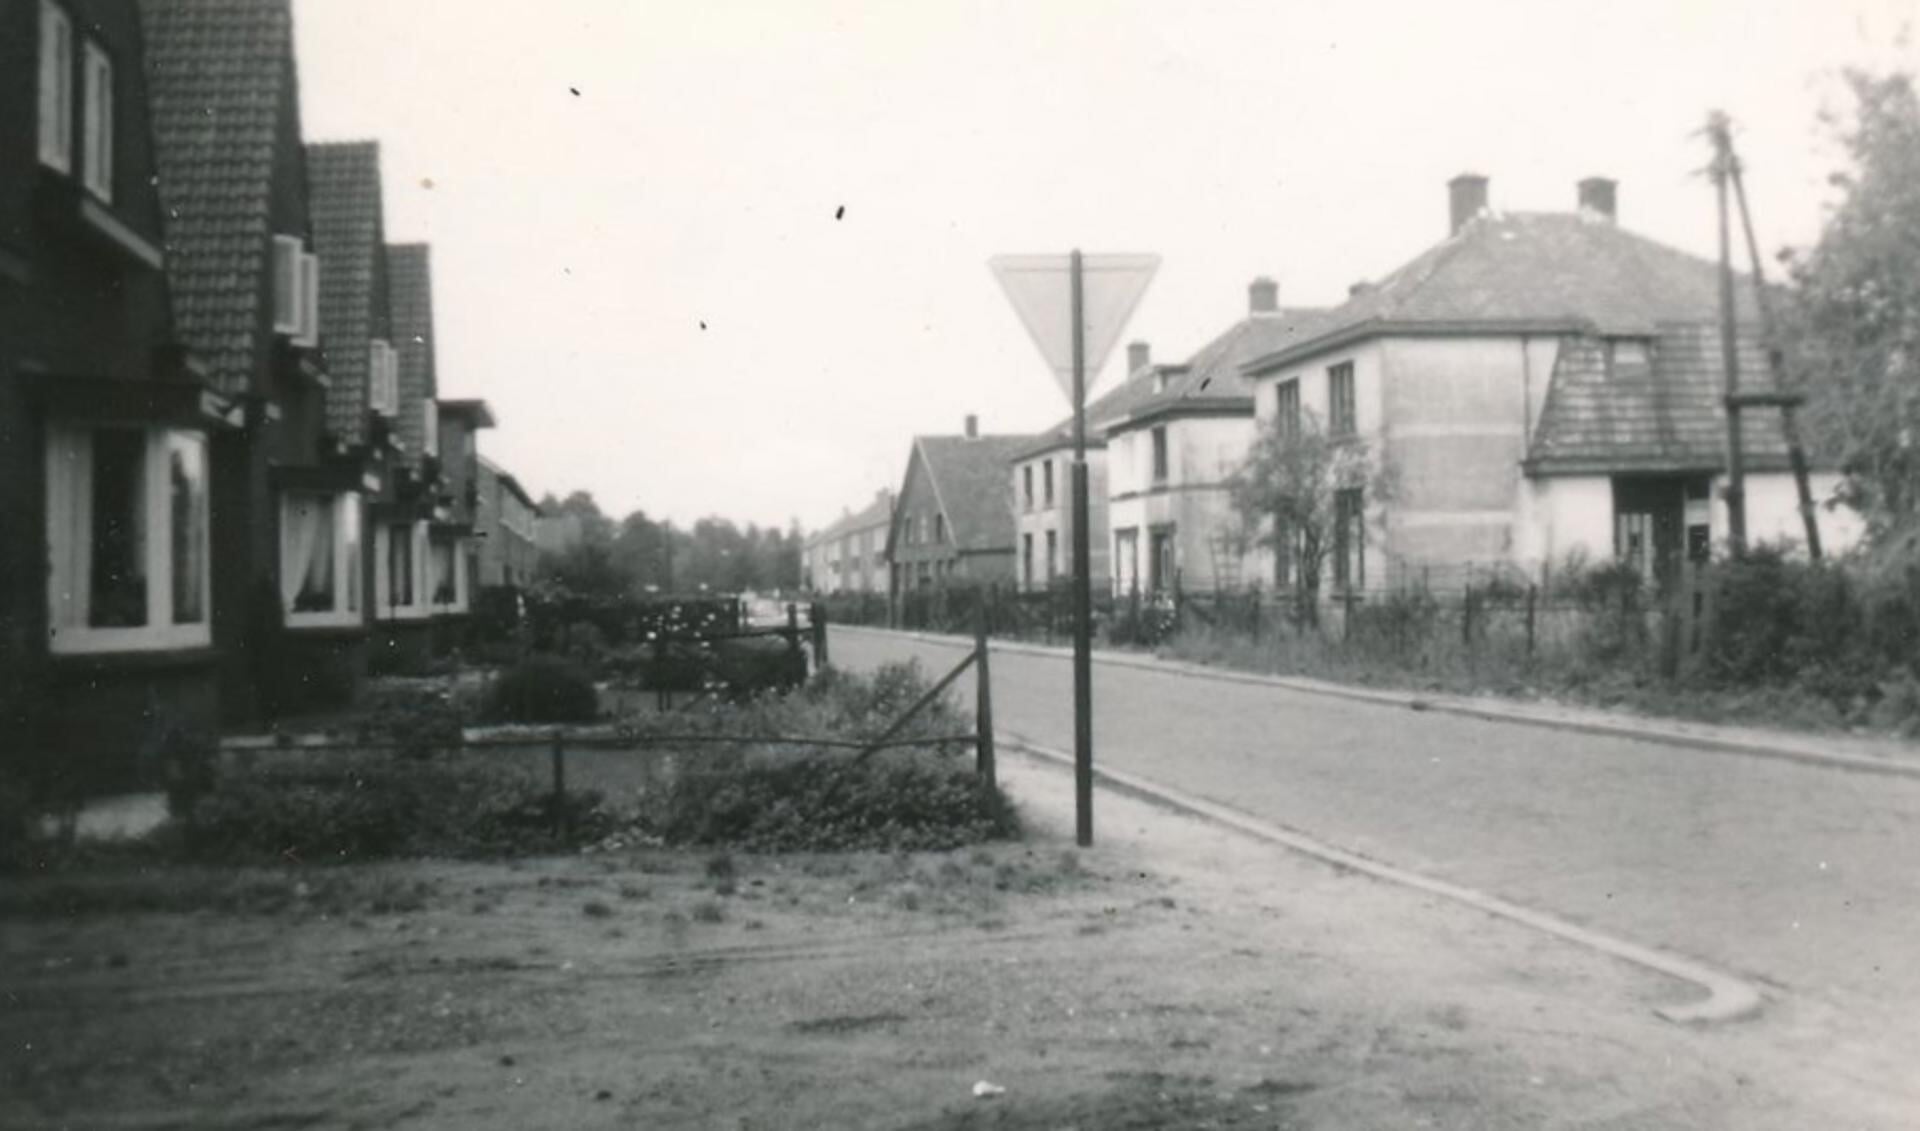 De oostelijke route voert onder andere over Ekris. Hier de situatie rond 1960 vanaf de hoek met de Stationsweg.